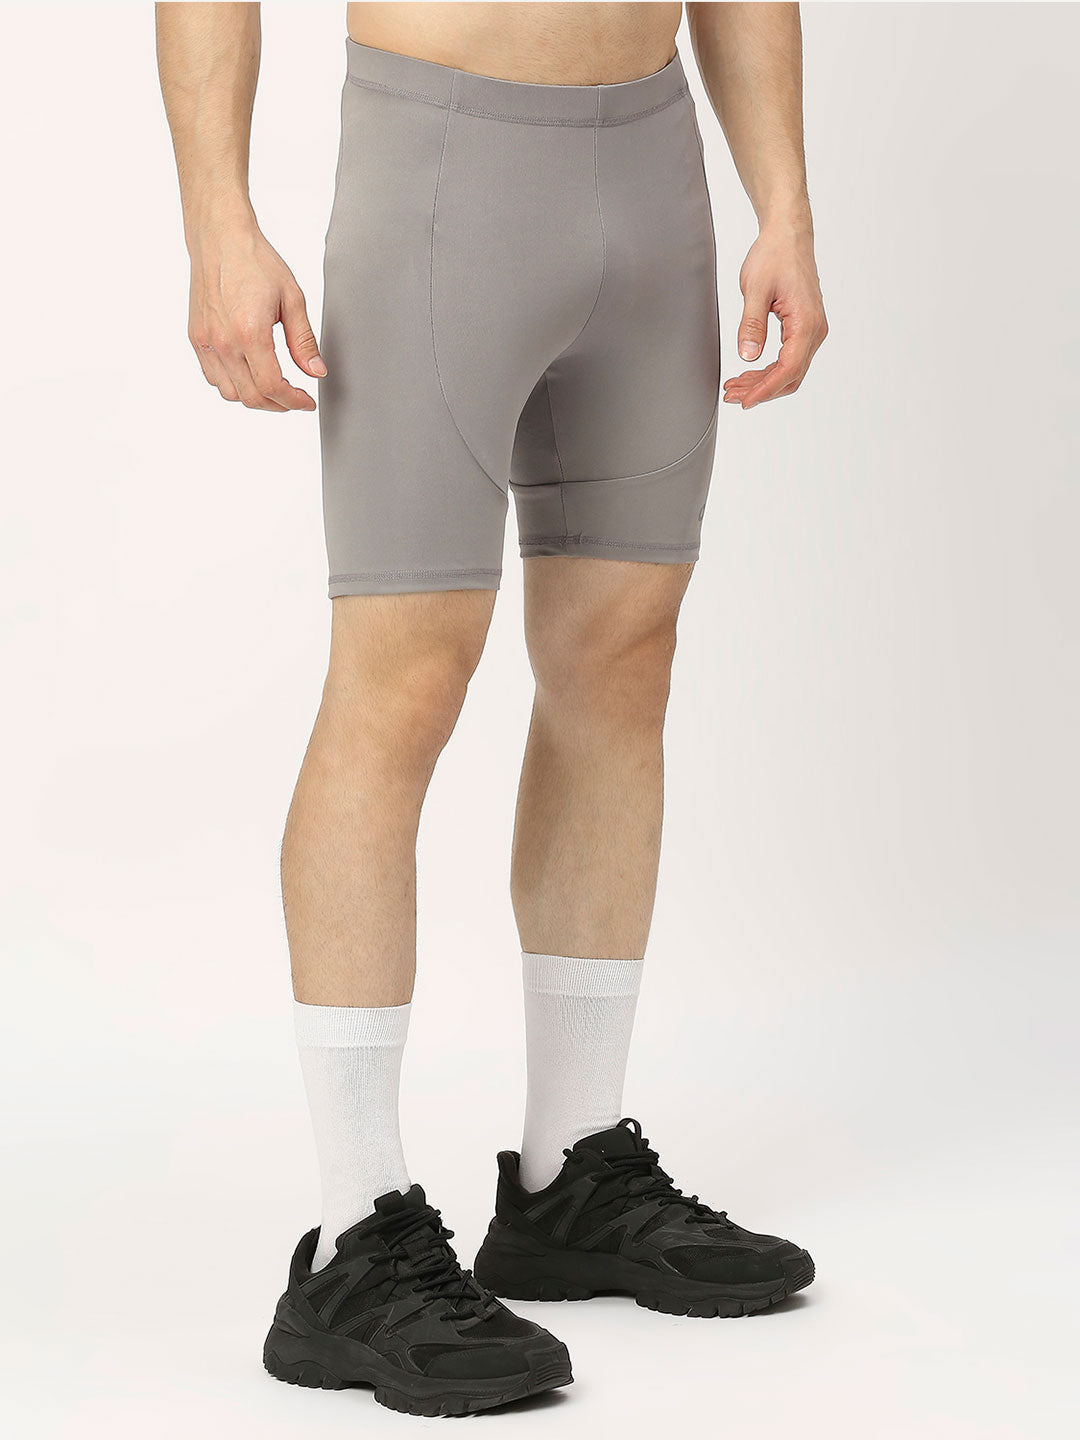 Men's Compression Shorts - Grey